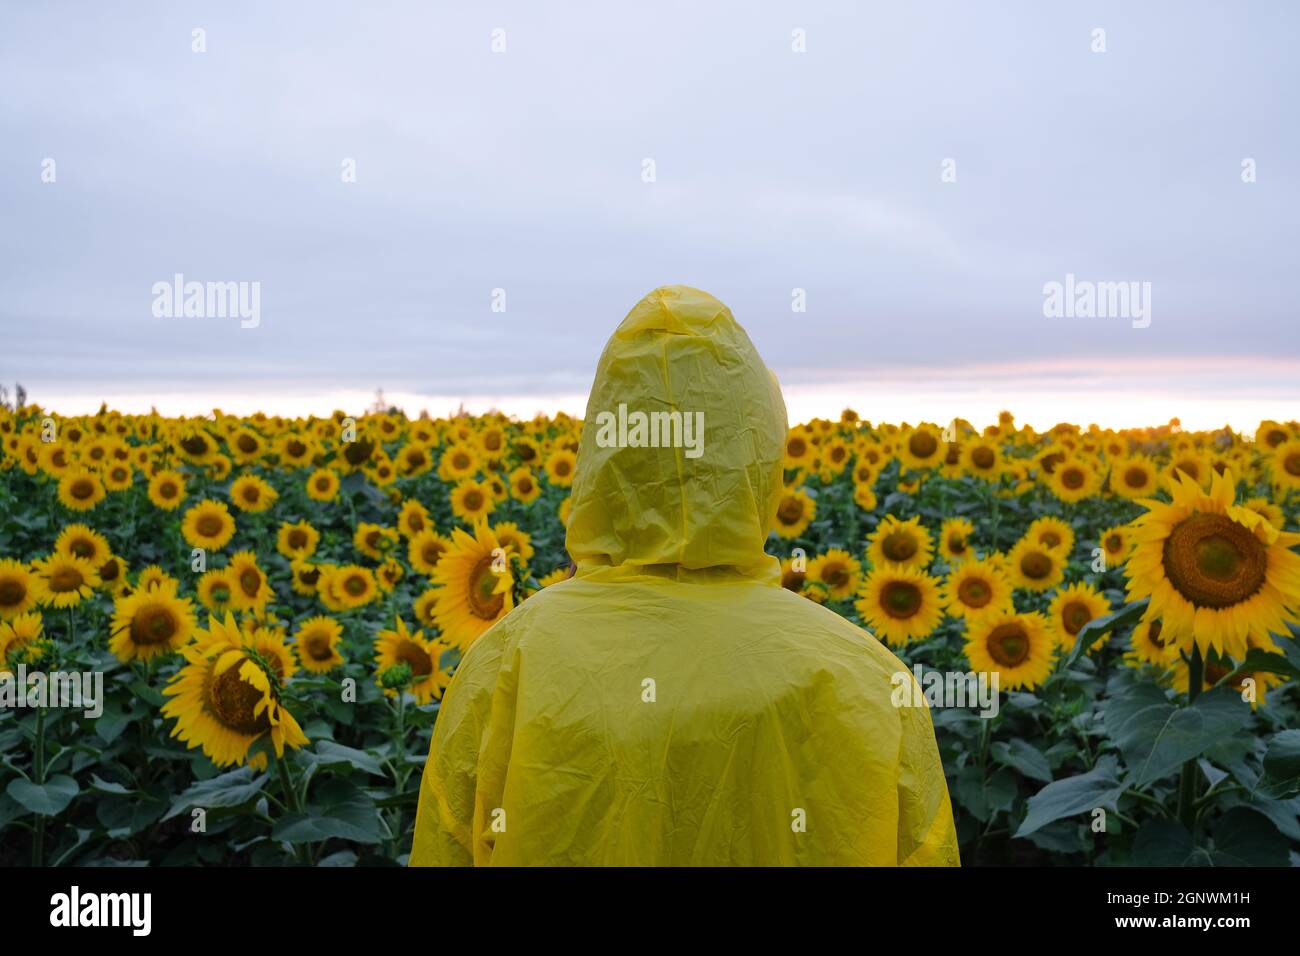 Mensch in gelber Haube Regenmantel im Sonnenblumenfeld stehend. Stockfoto